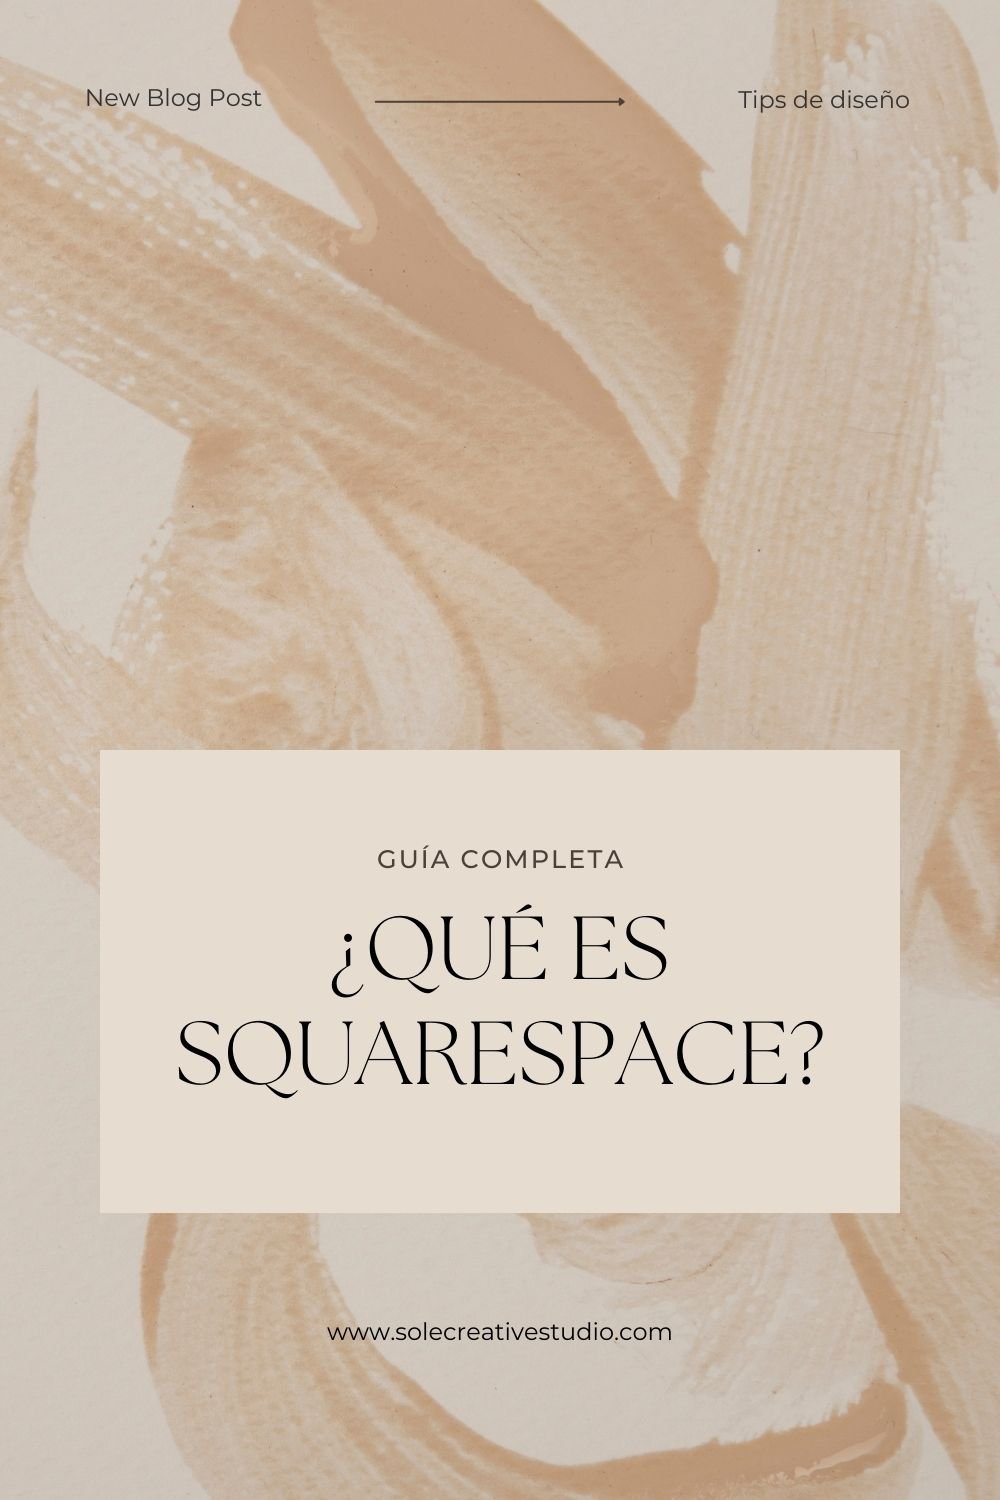 ¿Qué es Squarespace? Una guía completa